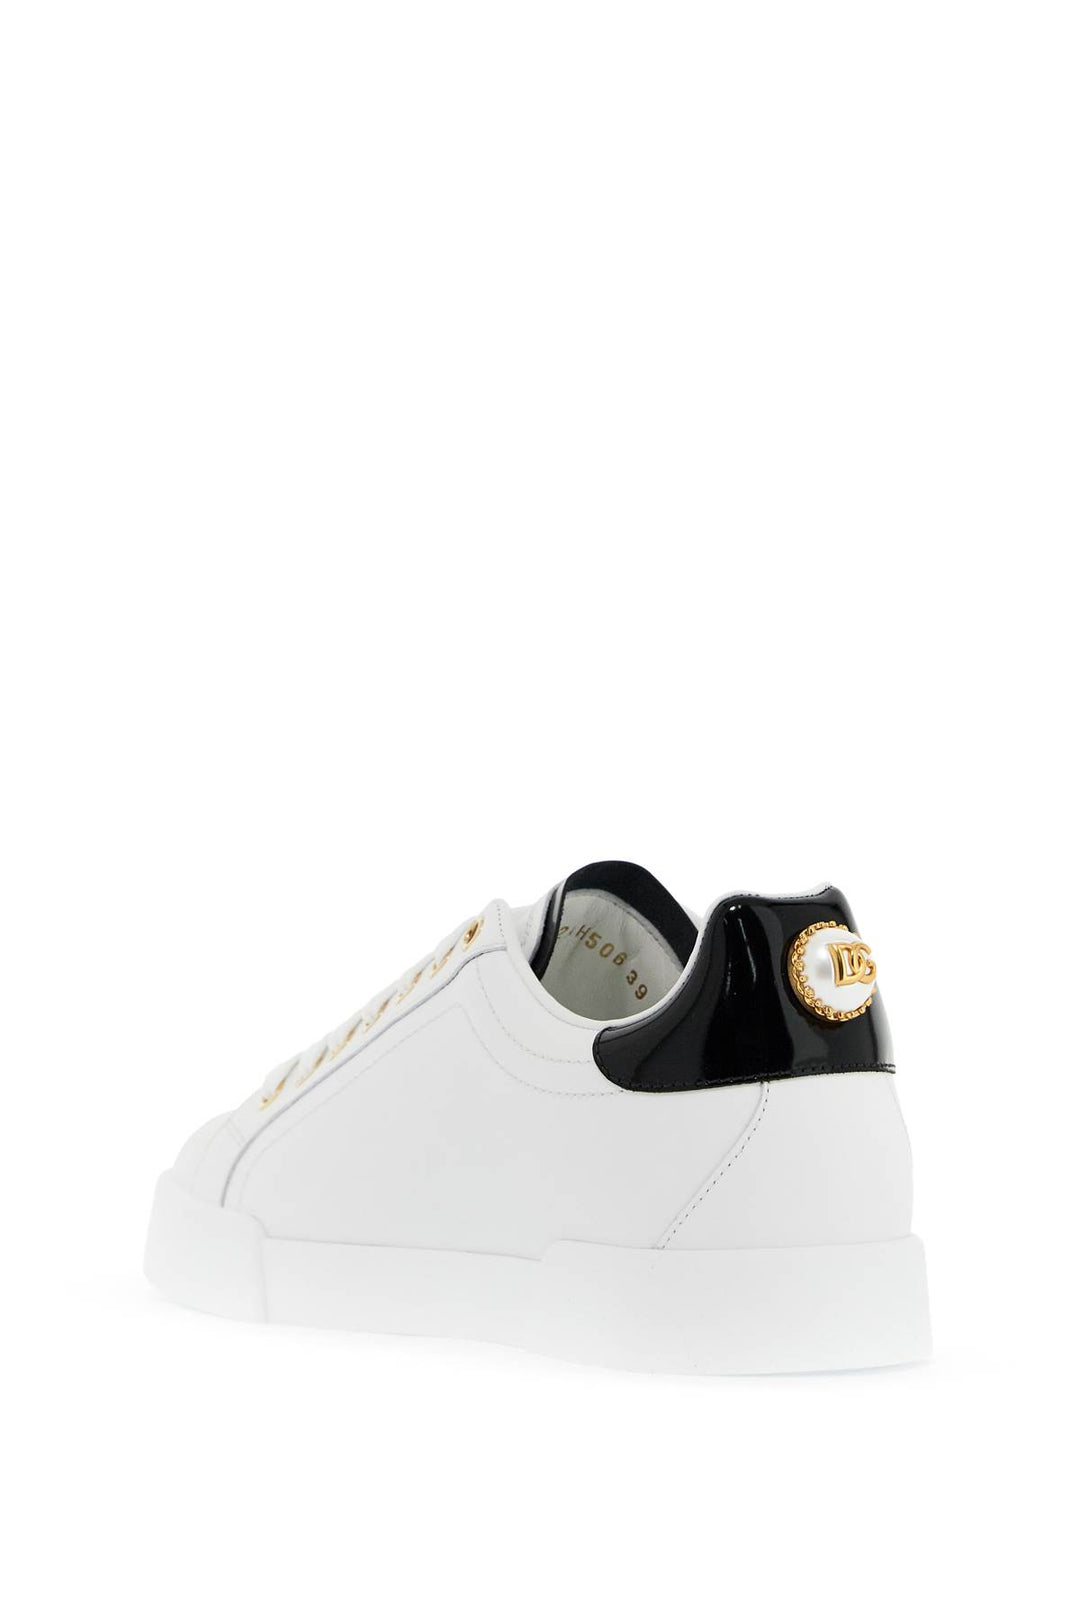 Dolce & Gabbana Portofino Sneakers With Pearl   White